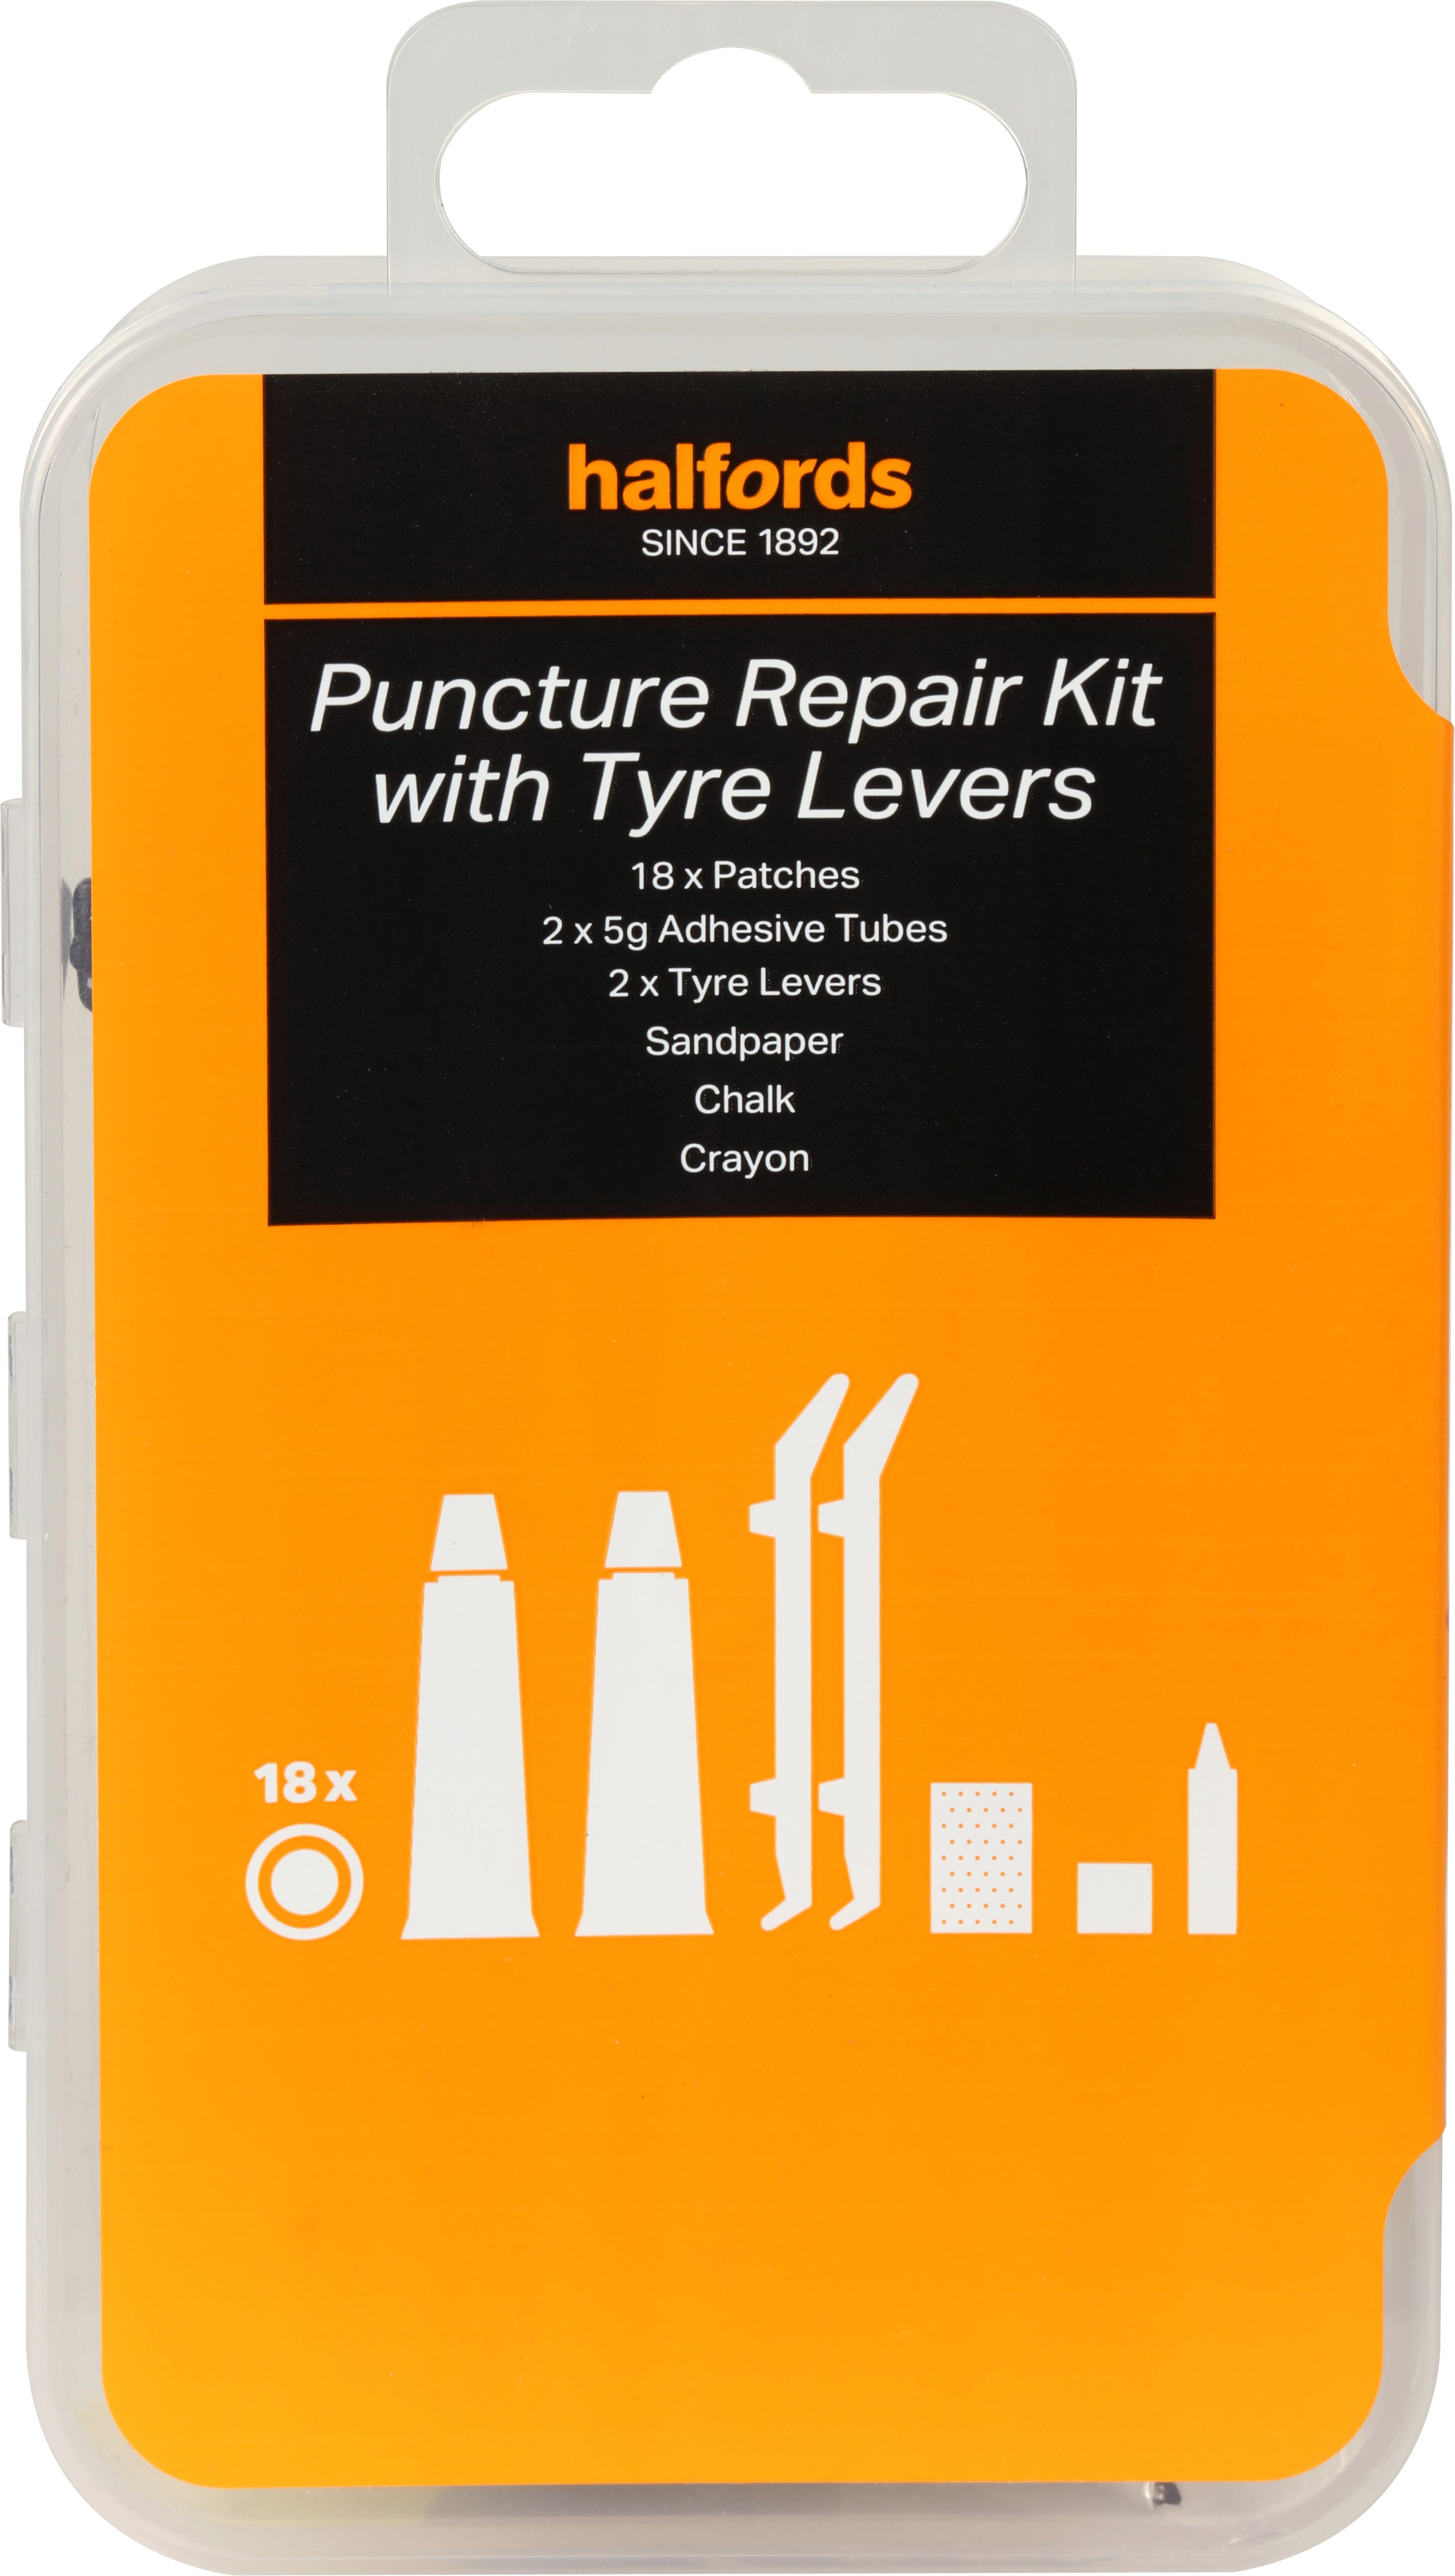 halford puncture repair kit